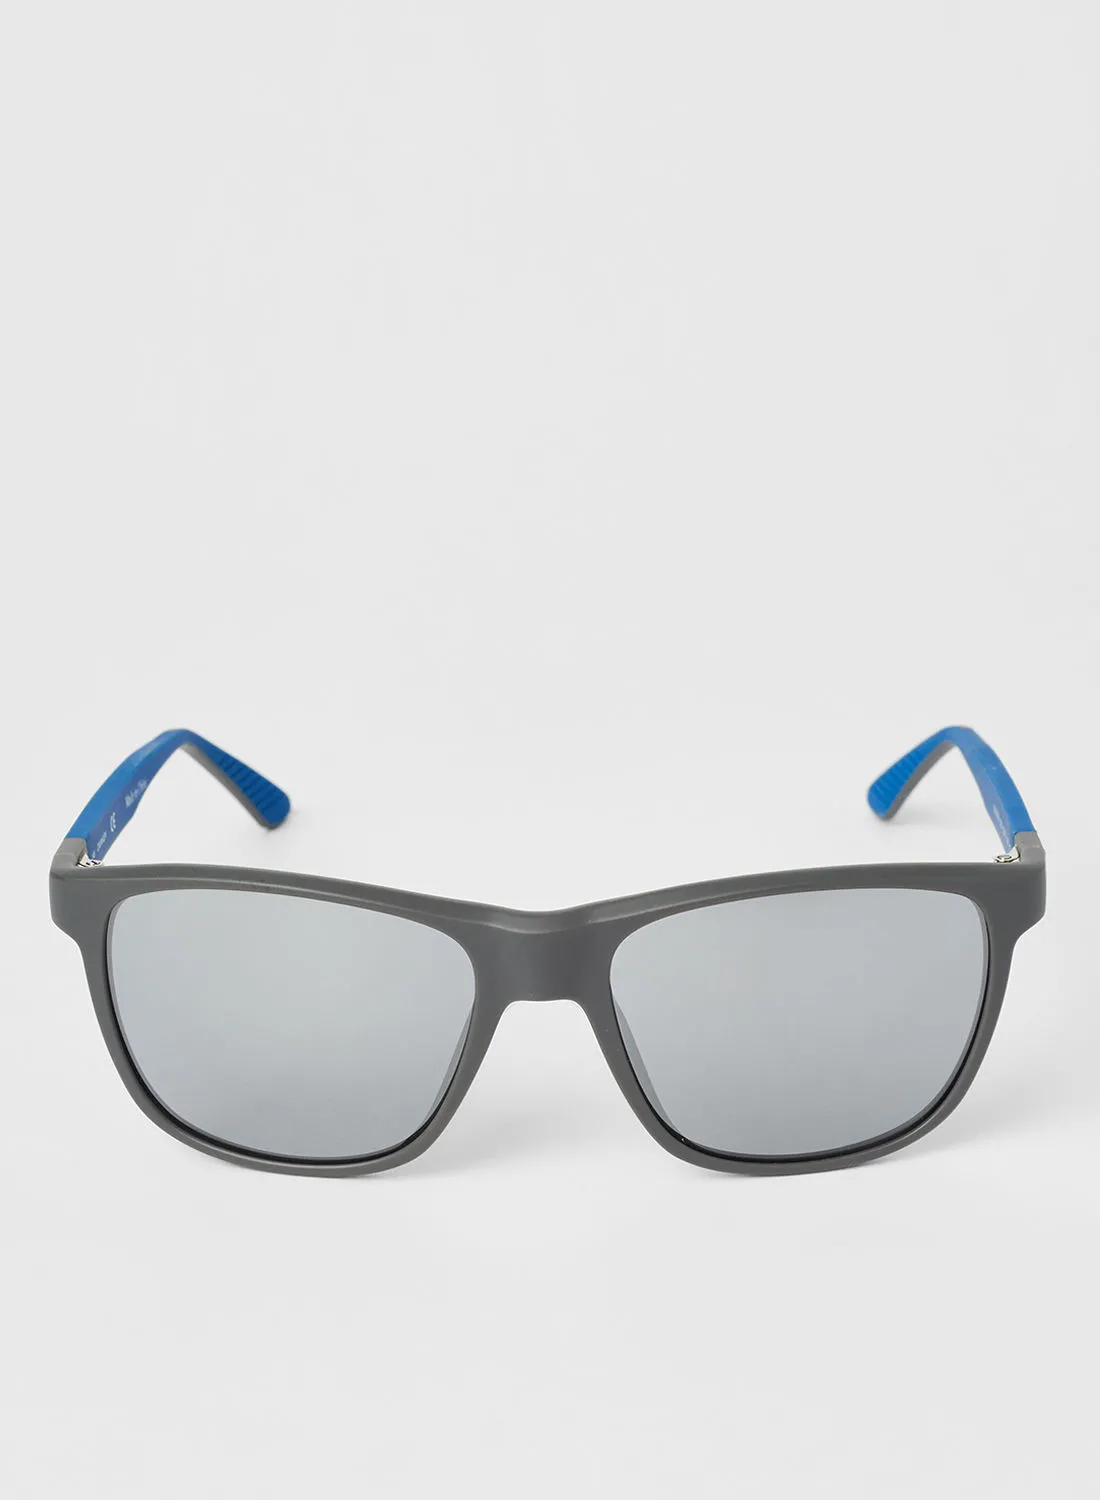 نظارة شمسية كالفين كلاين TR90 مستطيلة معدلة كاملة الحواف للرجال - مقاس العدسة: 55 مم